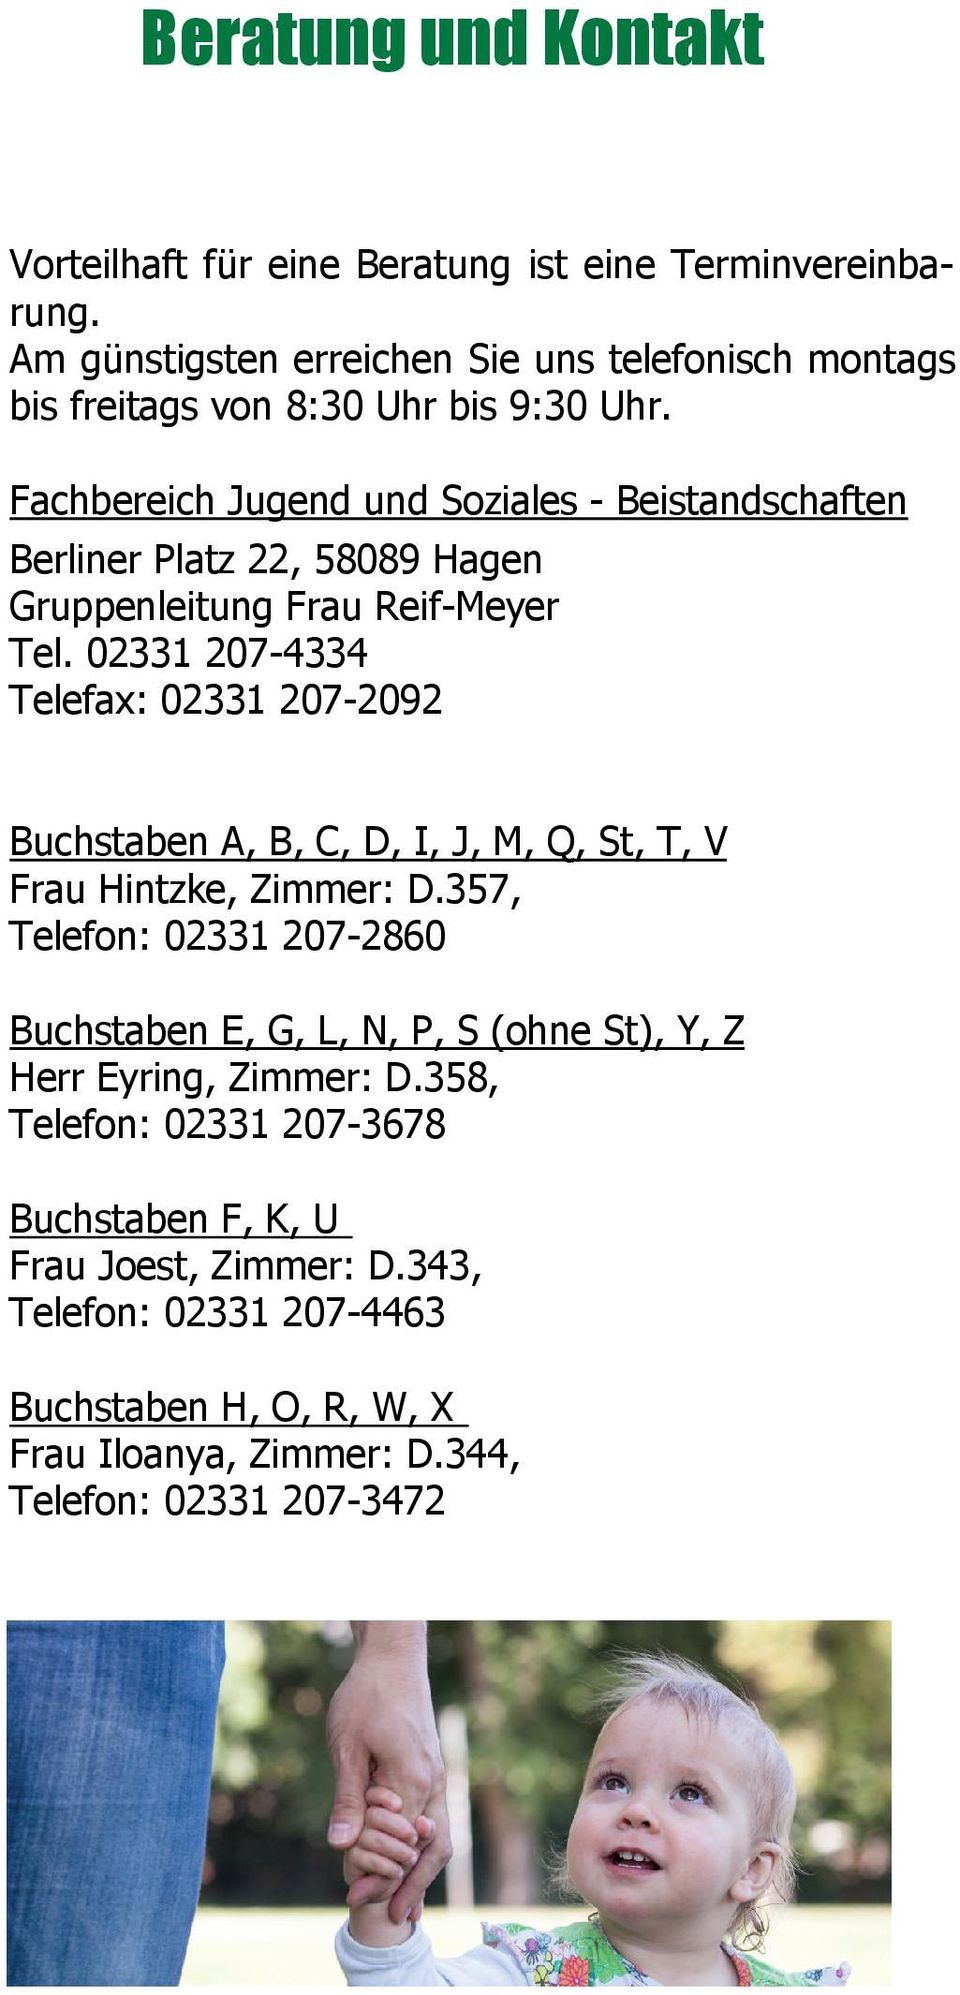 Fachbereich Am günstigsten Jugend erreichen Sie Soziales uns telefonisch - Beistandschaften montags Berliner bis freitags Platz von 22, 8:30 58089 Uhr bis Hagen 9:30 Uhr.